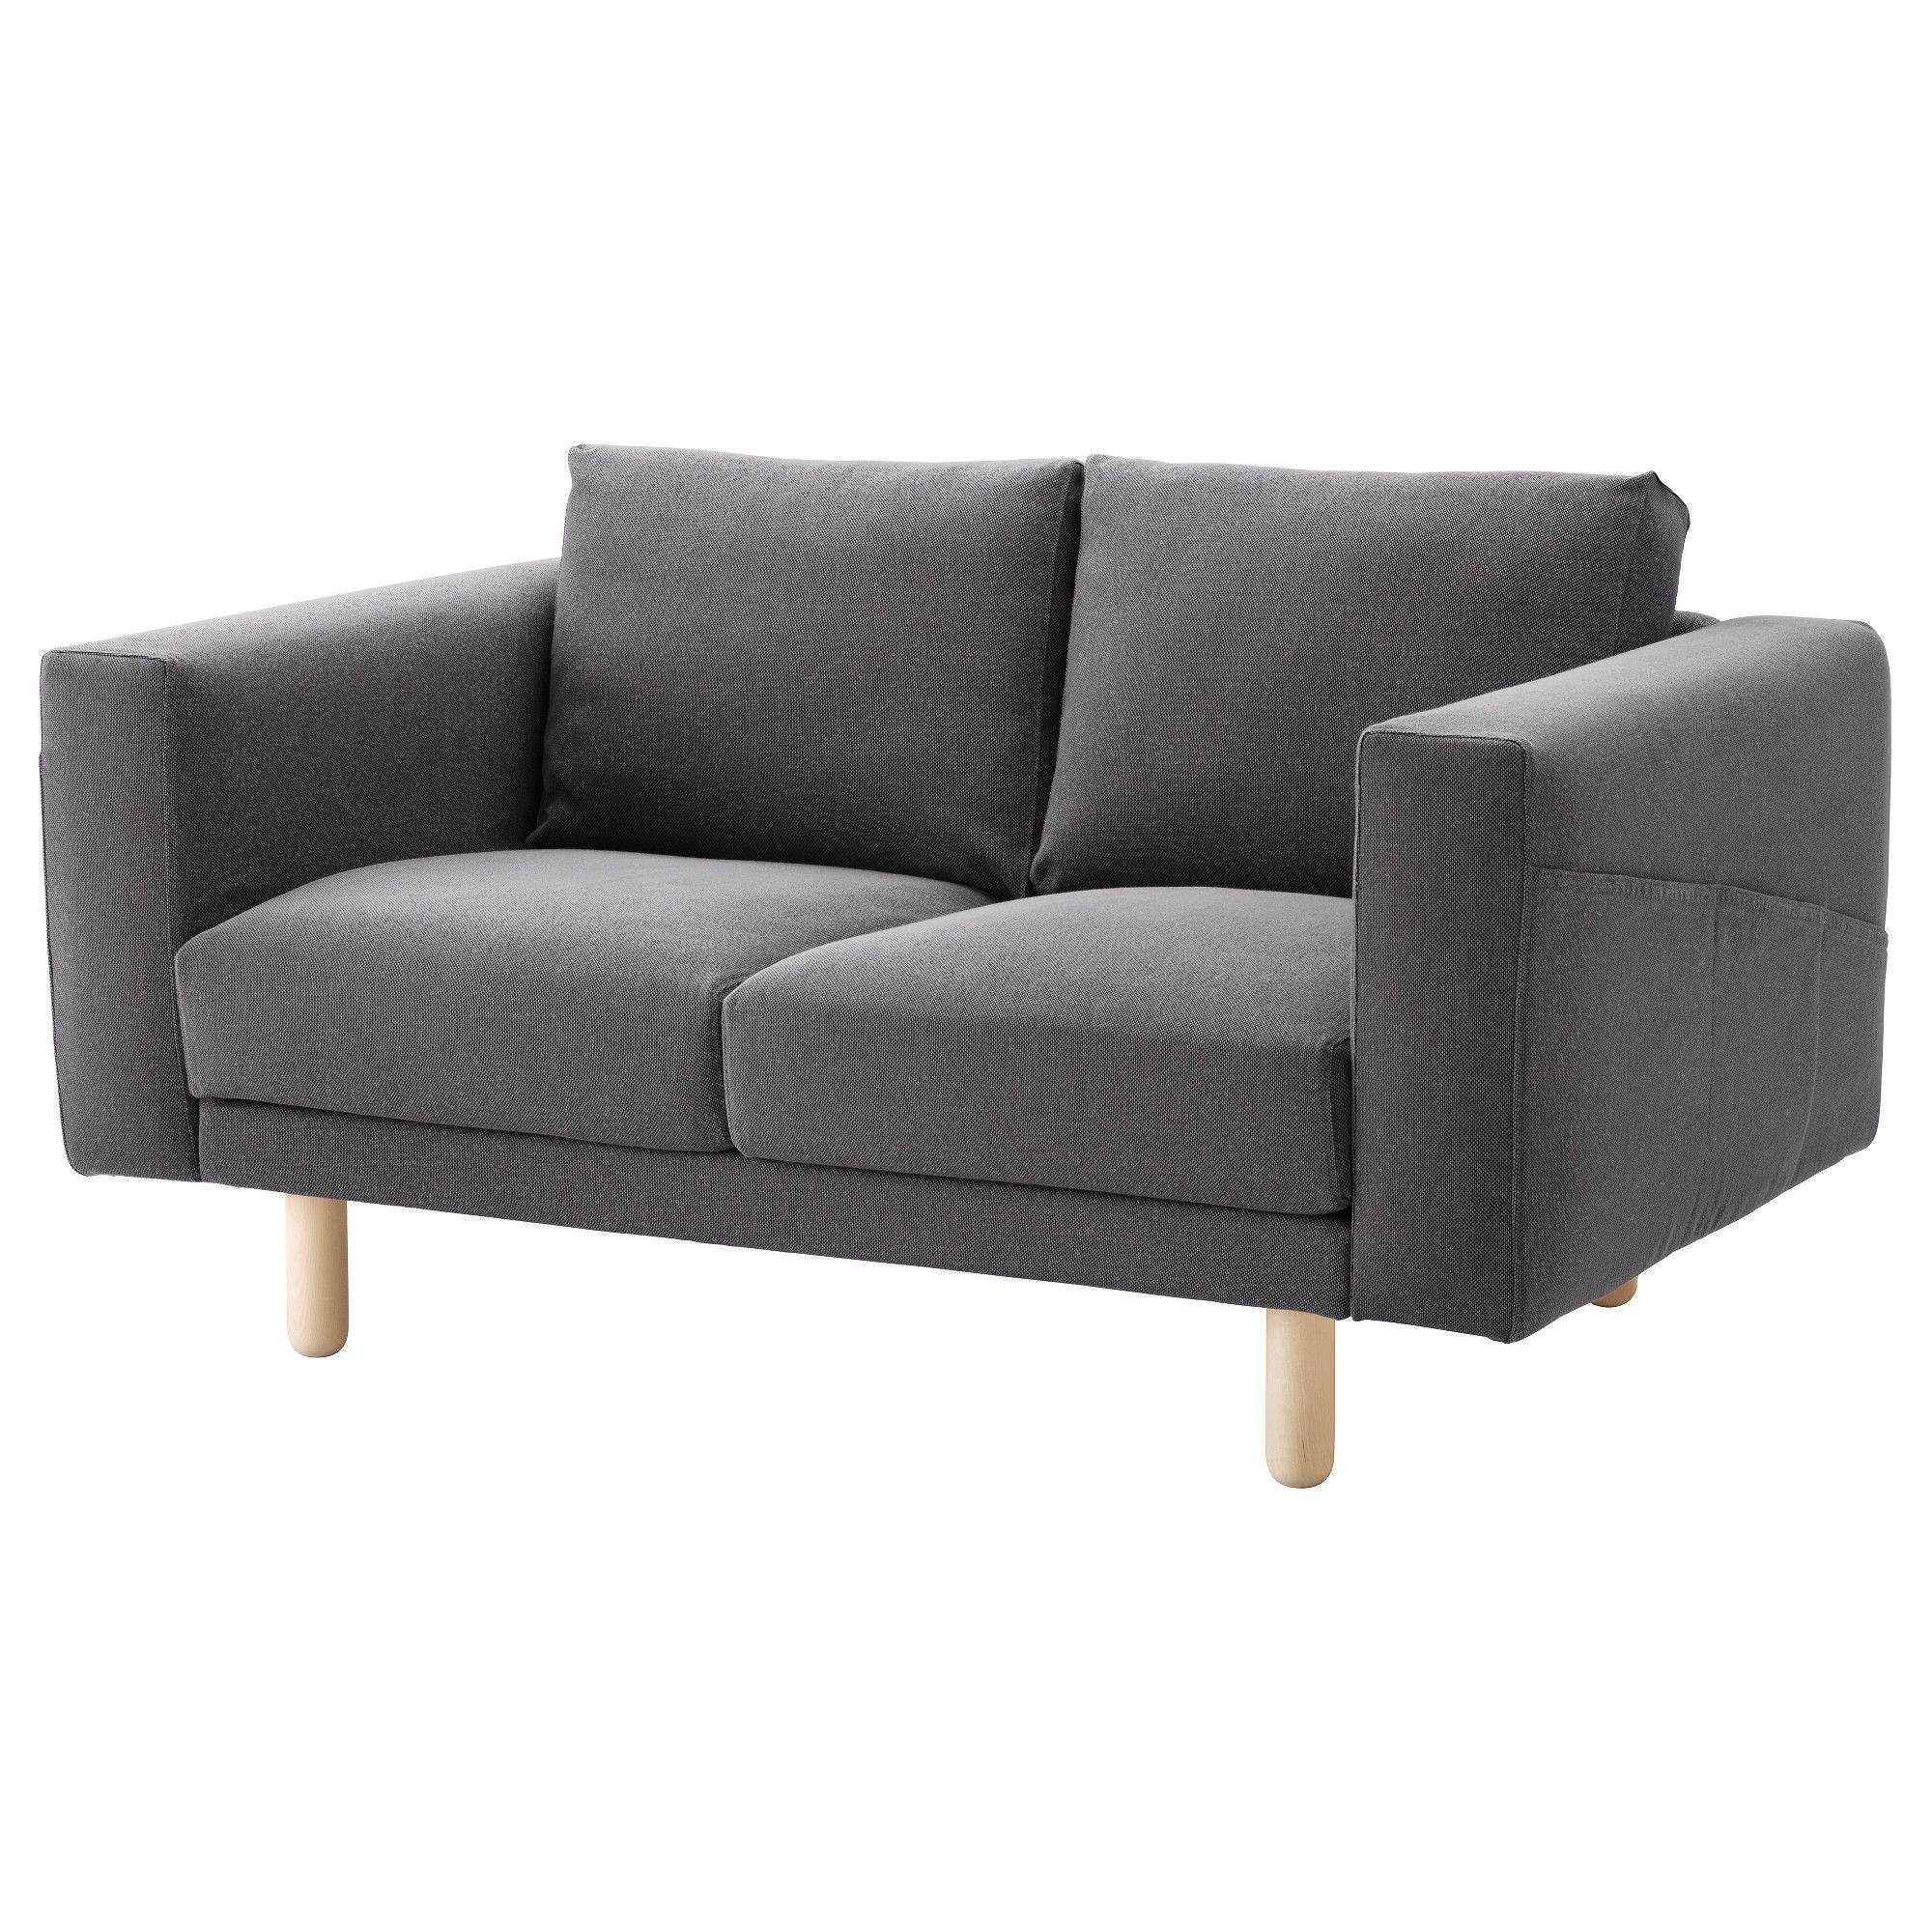 Two Seater Sofas | Ikea Ireland – Dublin With Regard To Mini Sofas (View 3 of 10)